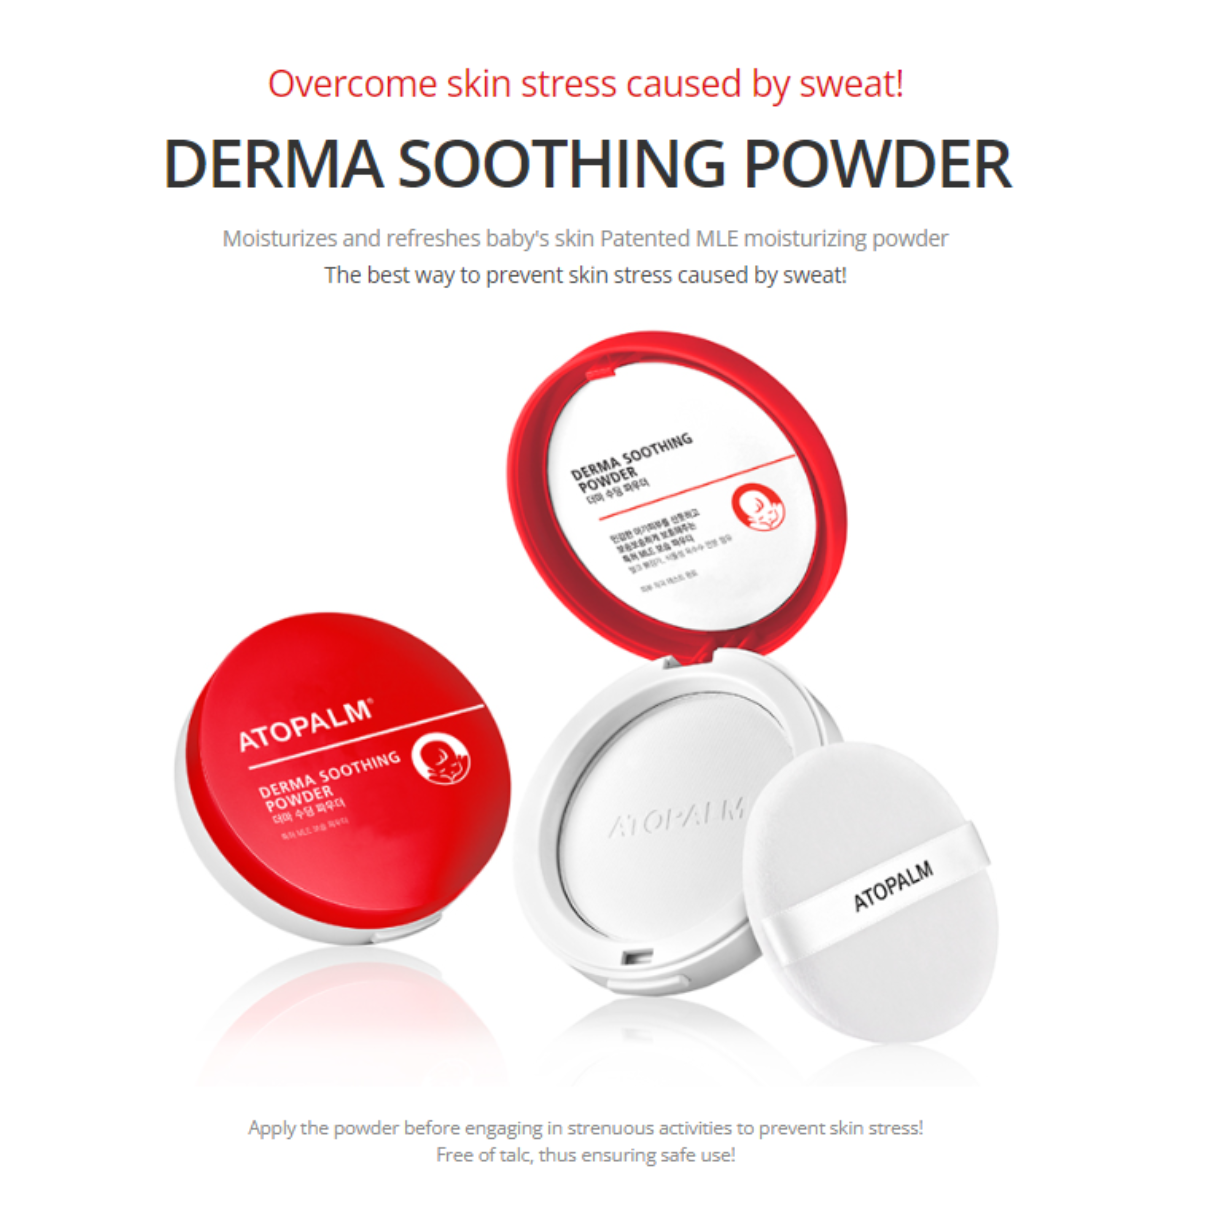 [ATOPALM] Derma Soothing Powder